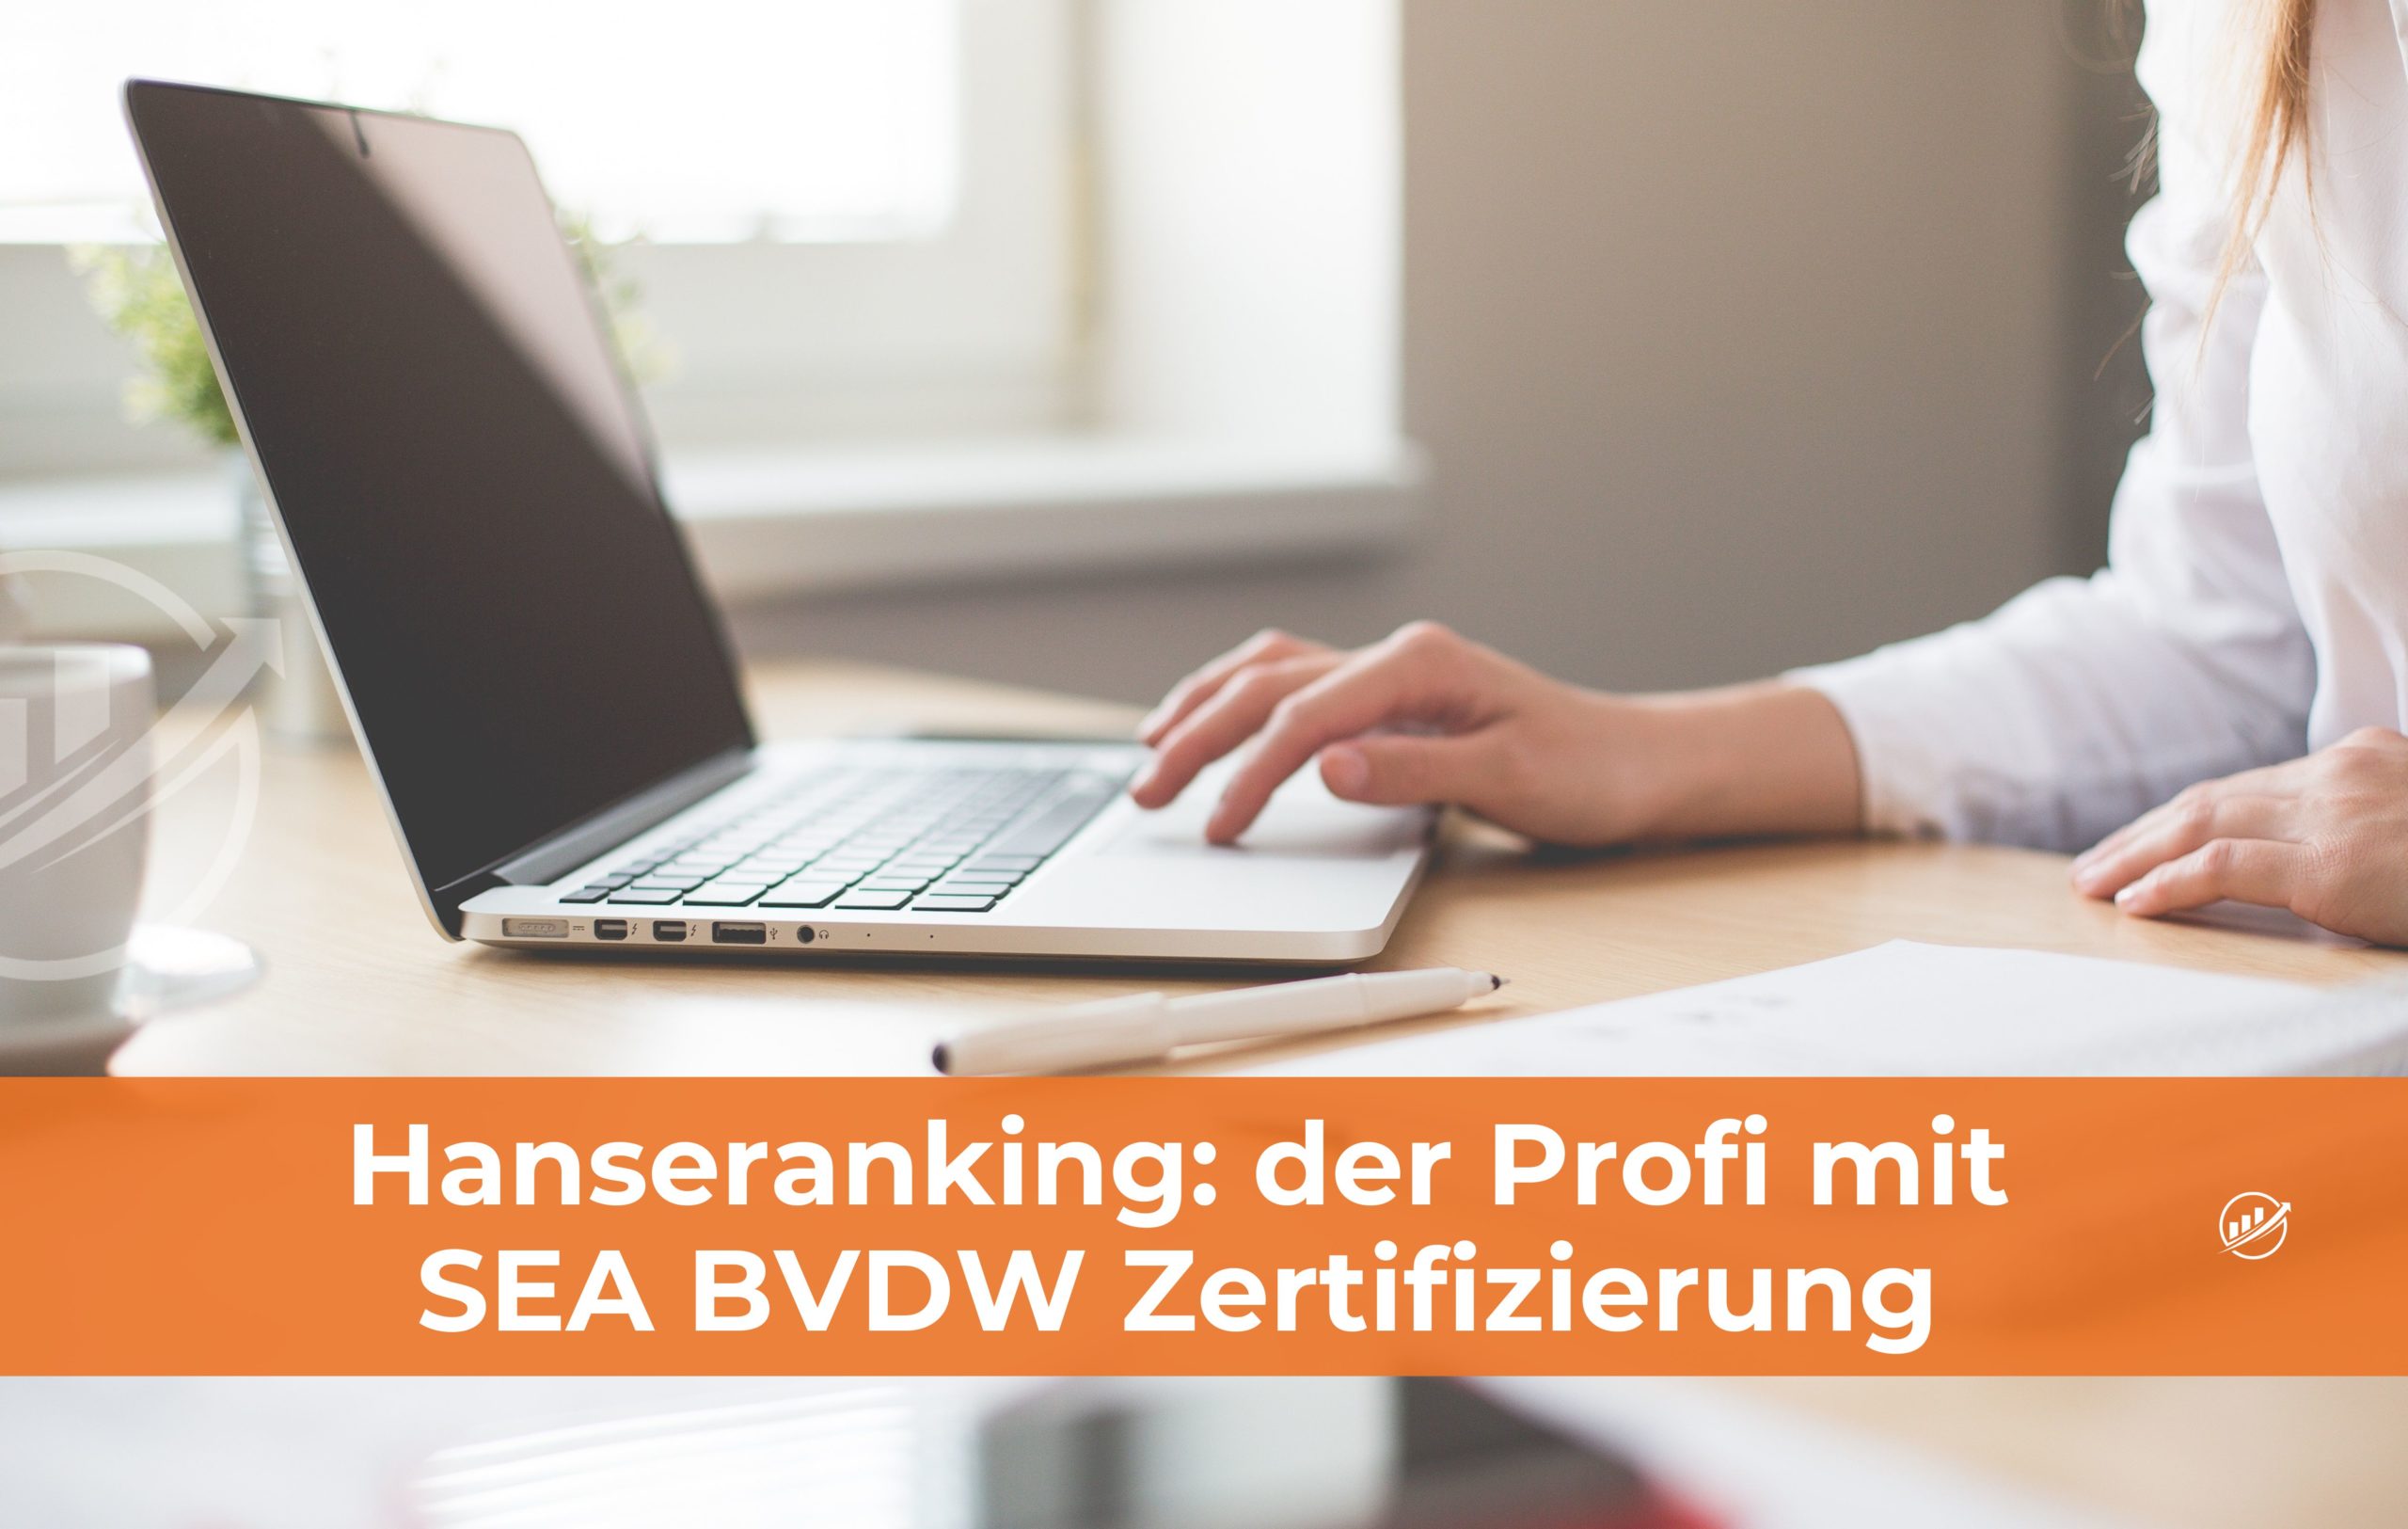 Hanseranking: der Profi mit SEA BVDW Zertifizierung